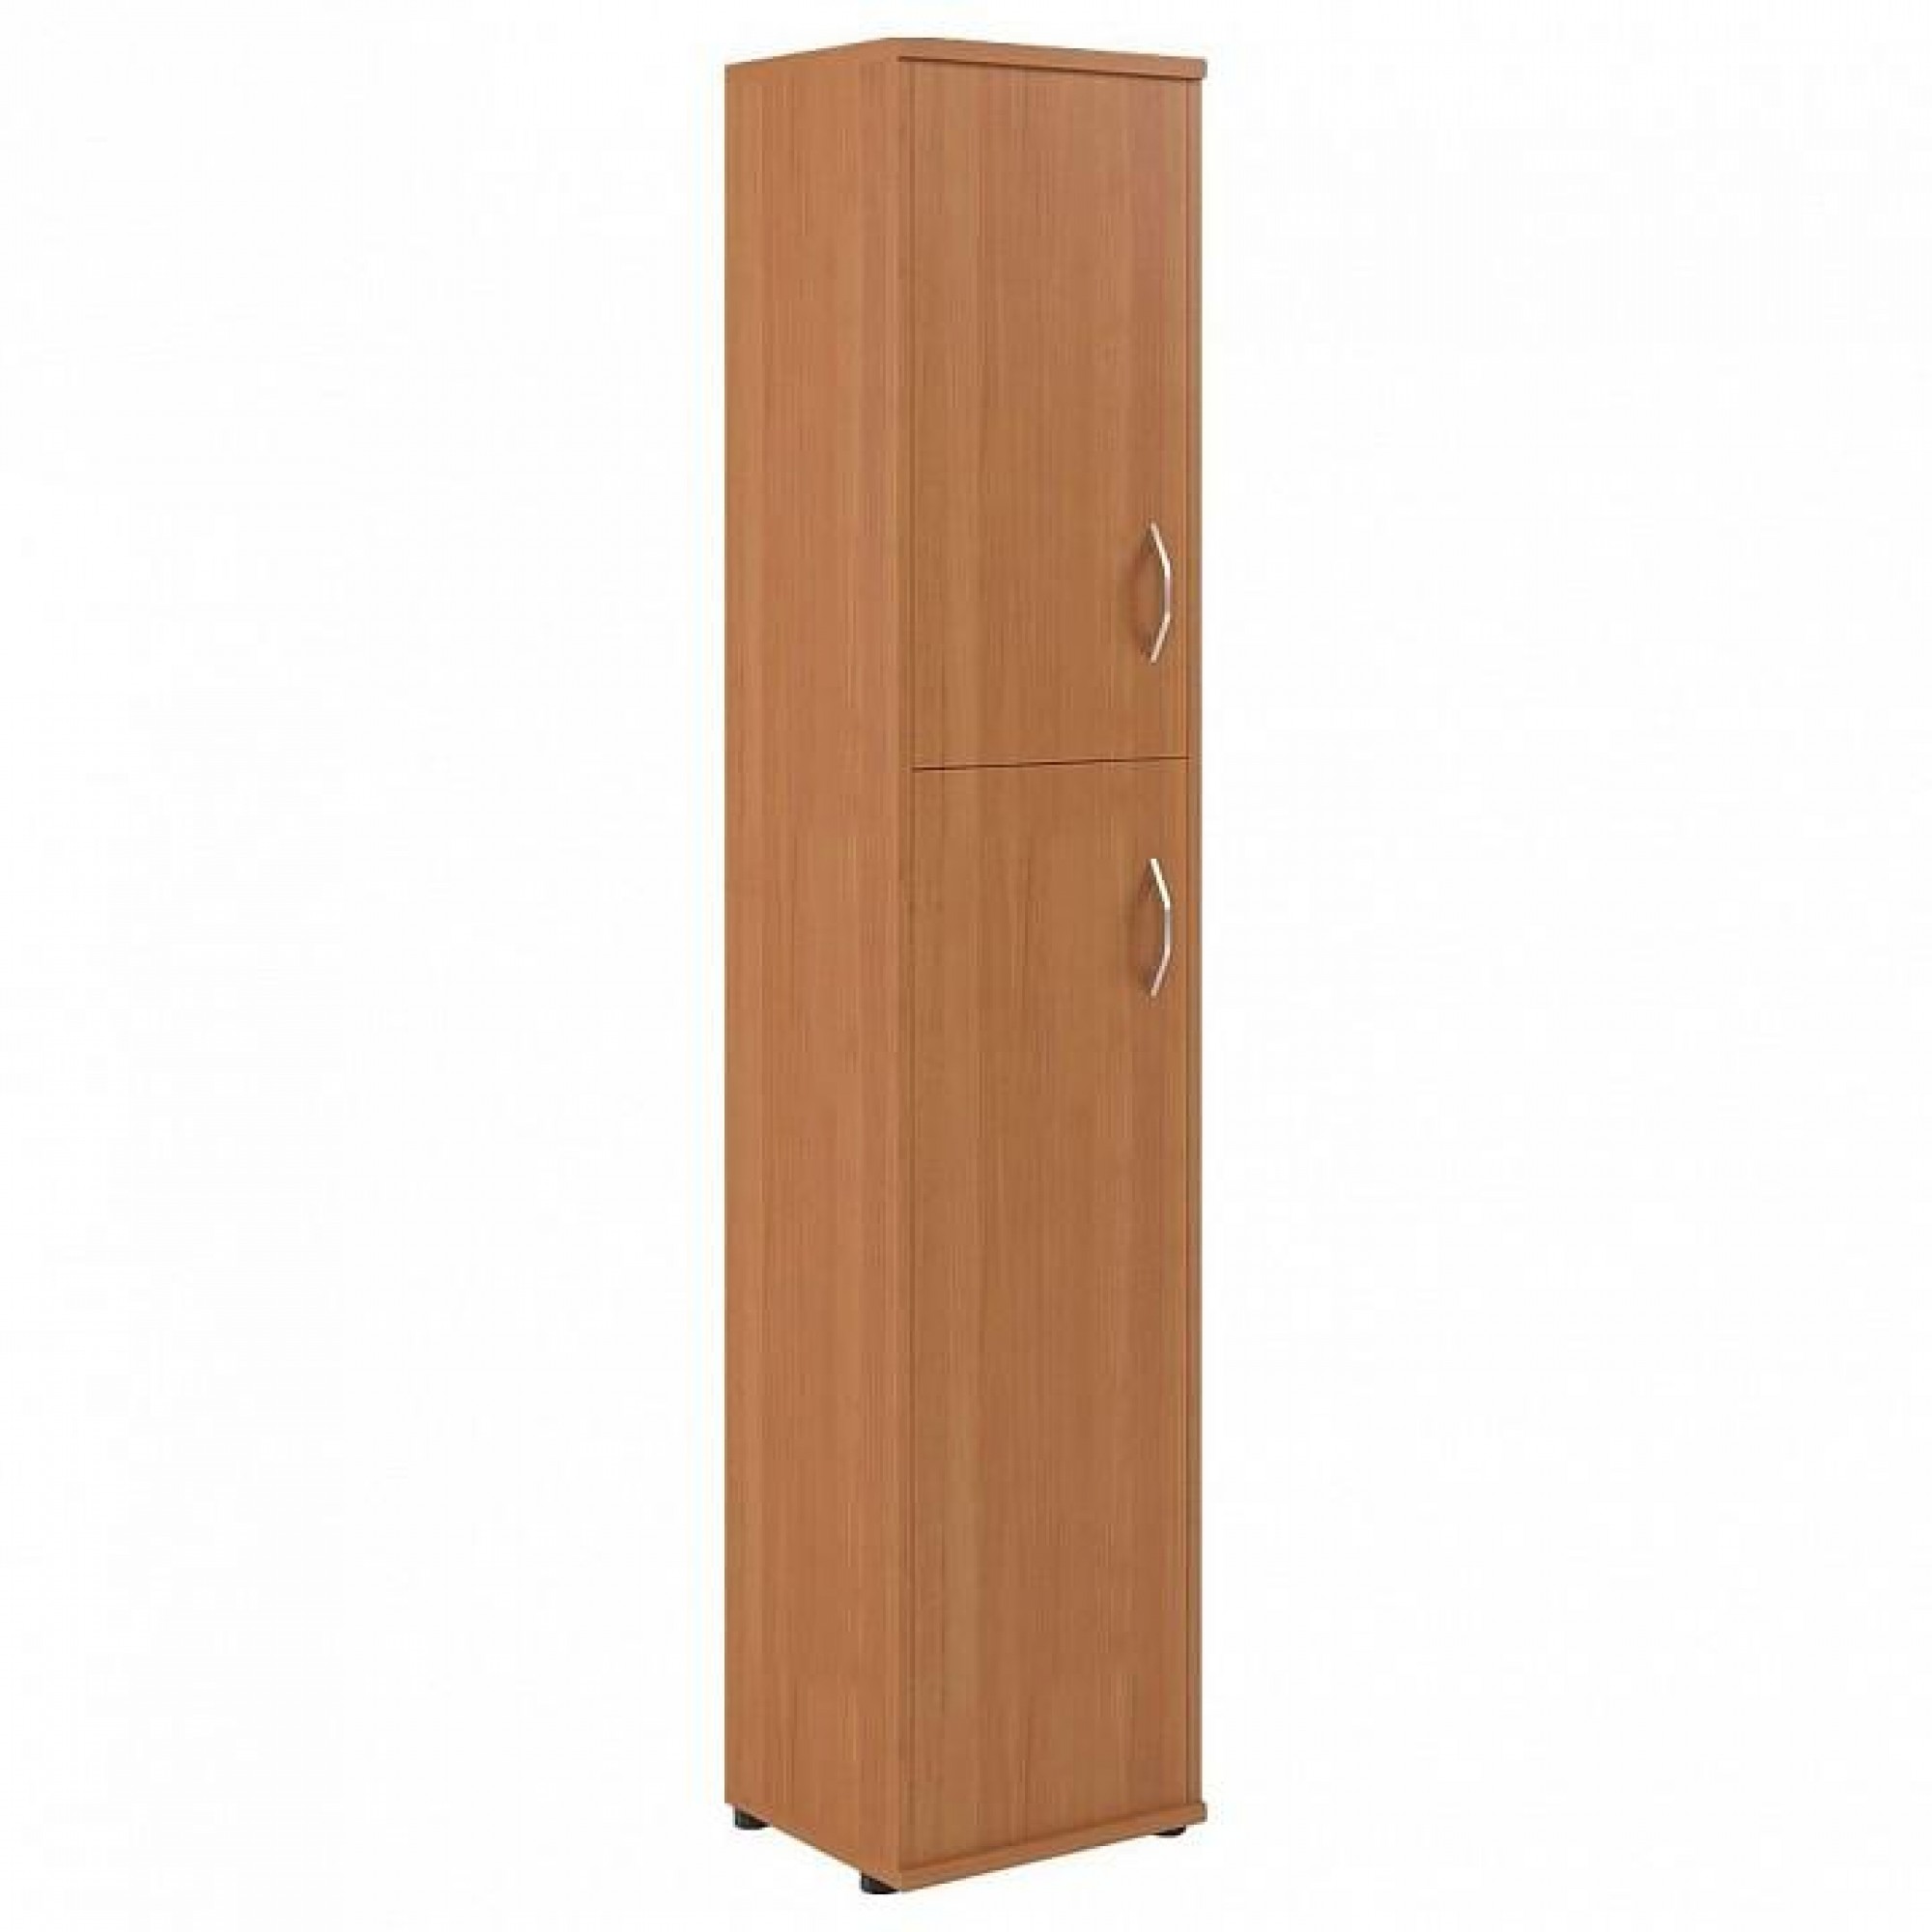 Шкаф книжный Imago СУ-1.8 Л древесина коричневая светлая древесина SKY_sk-01217790